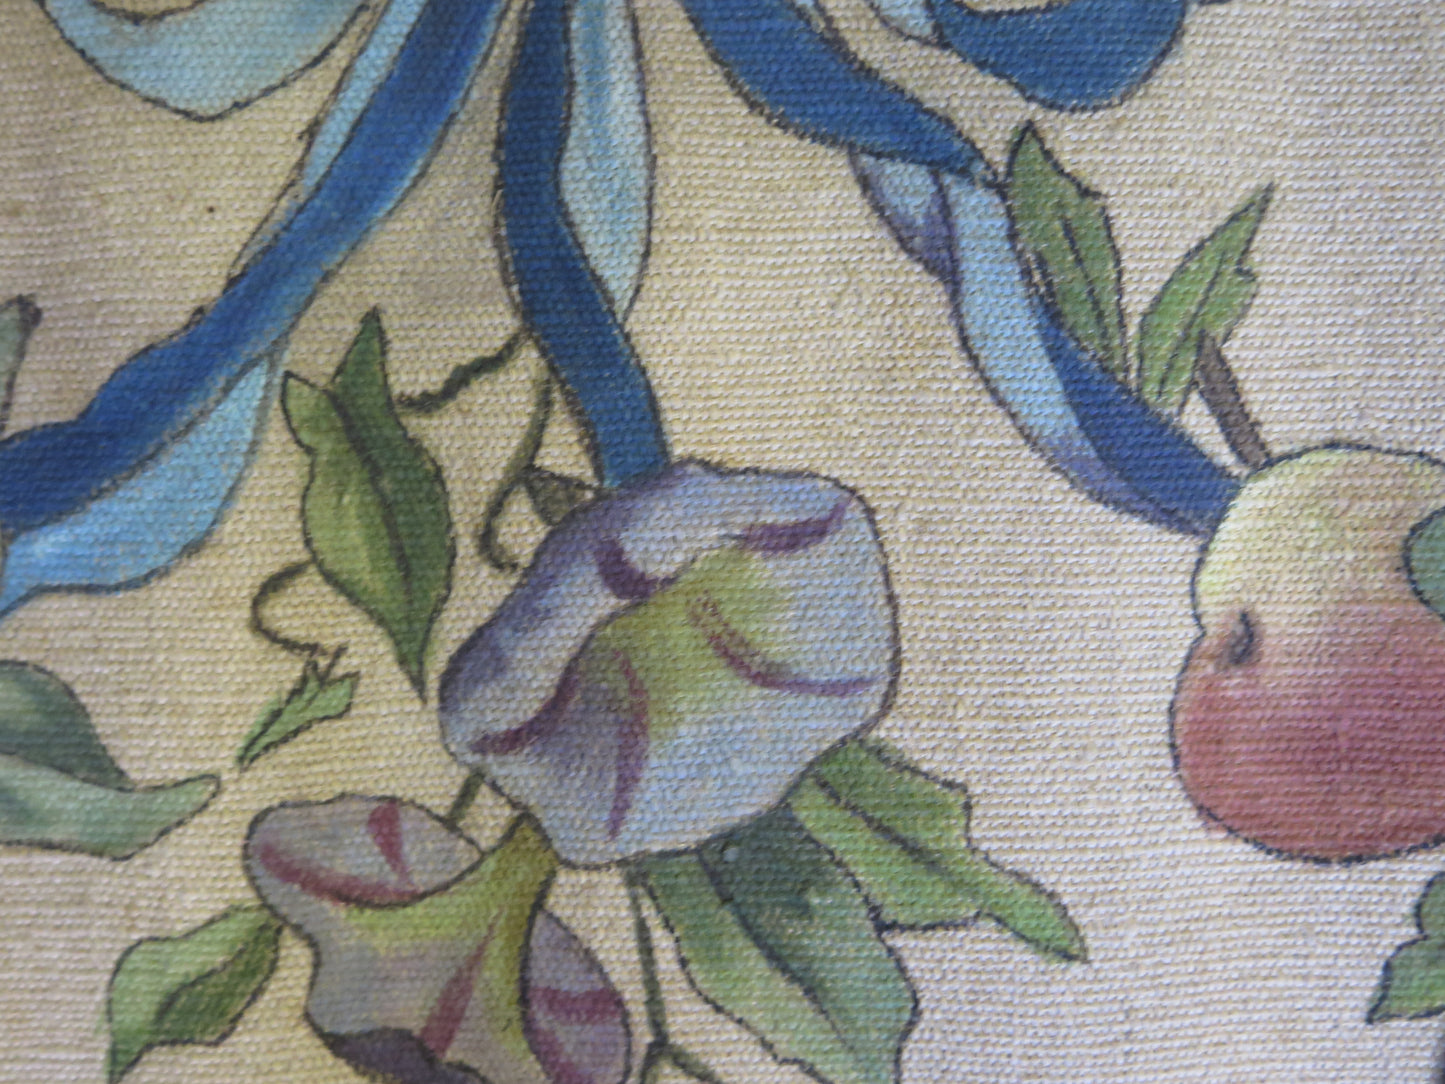 4 antique art nouveau art nouveau paintings floral festoons hand painted wall decoration X4